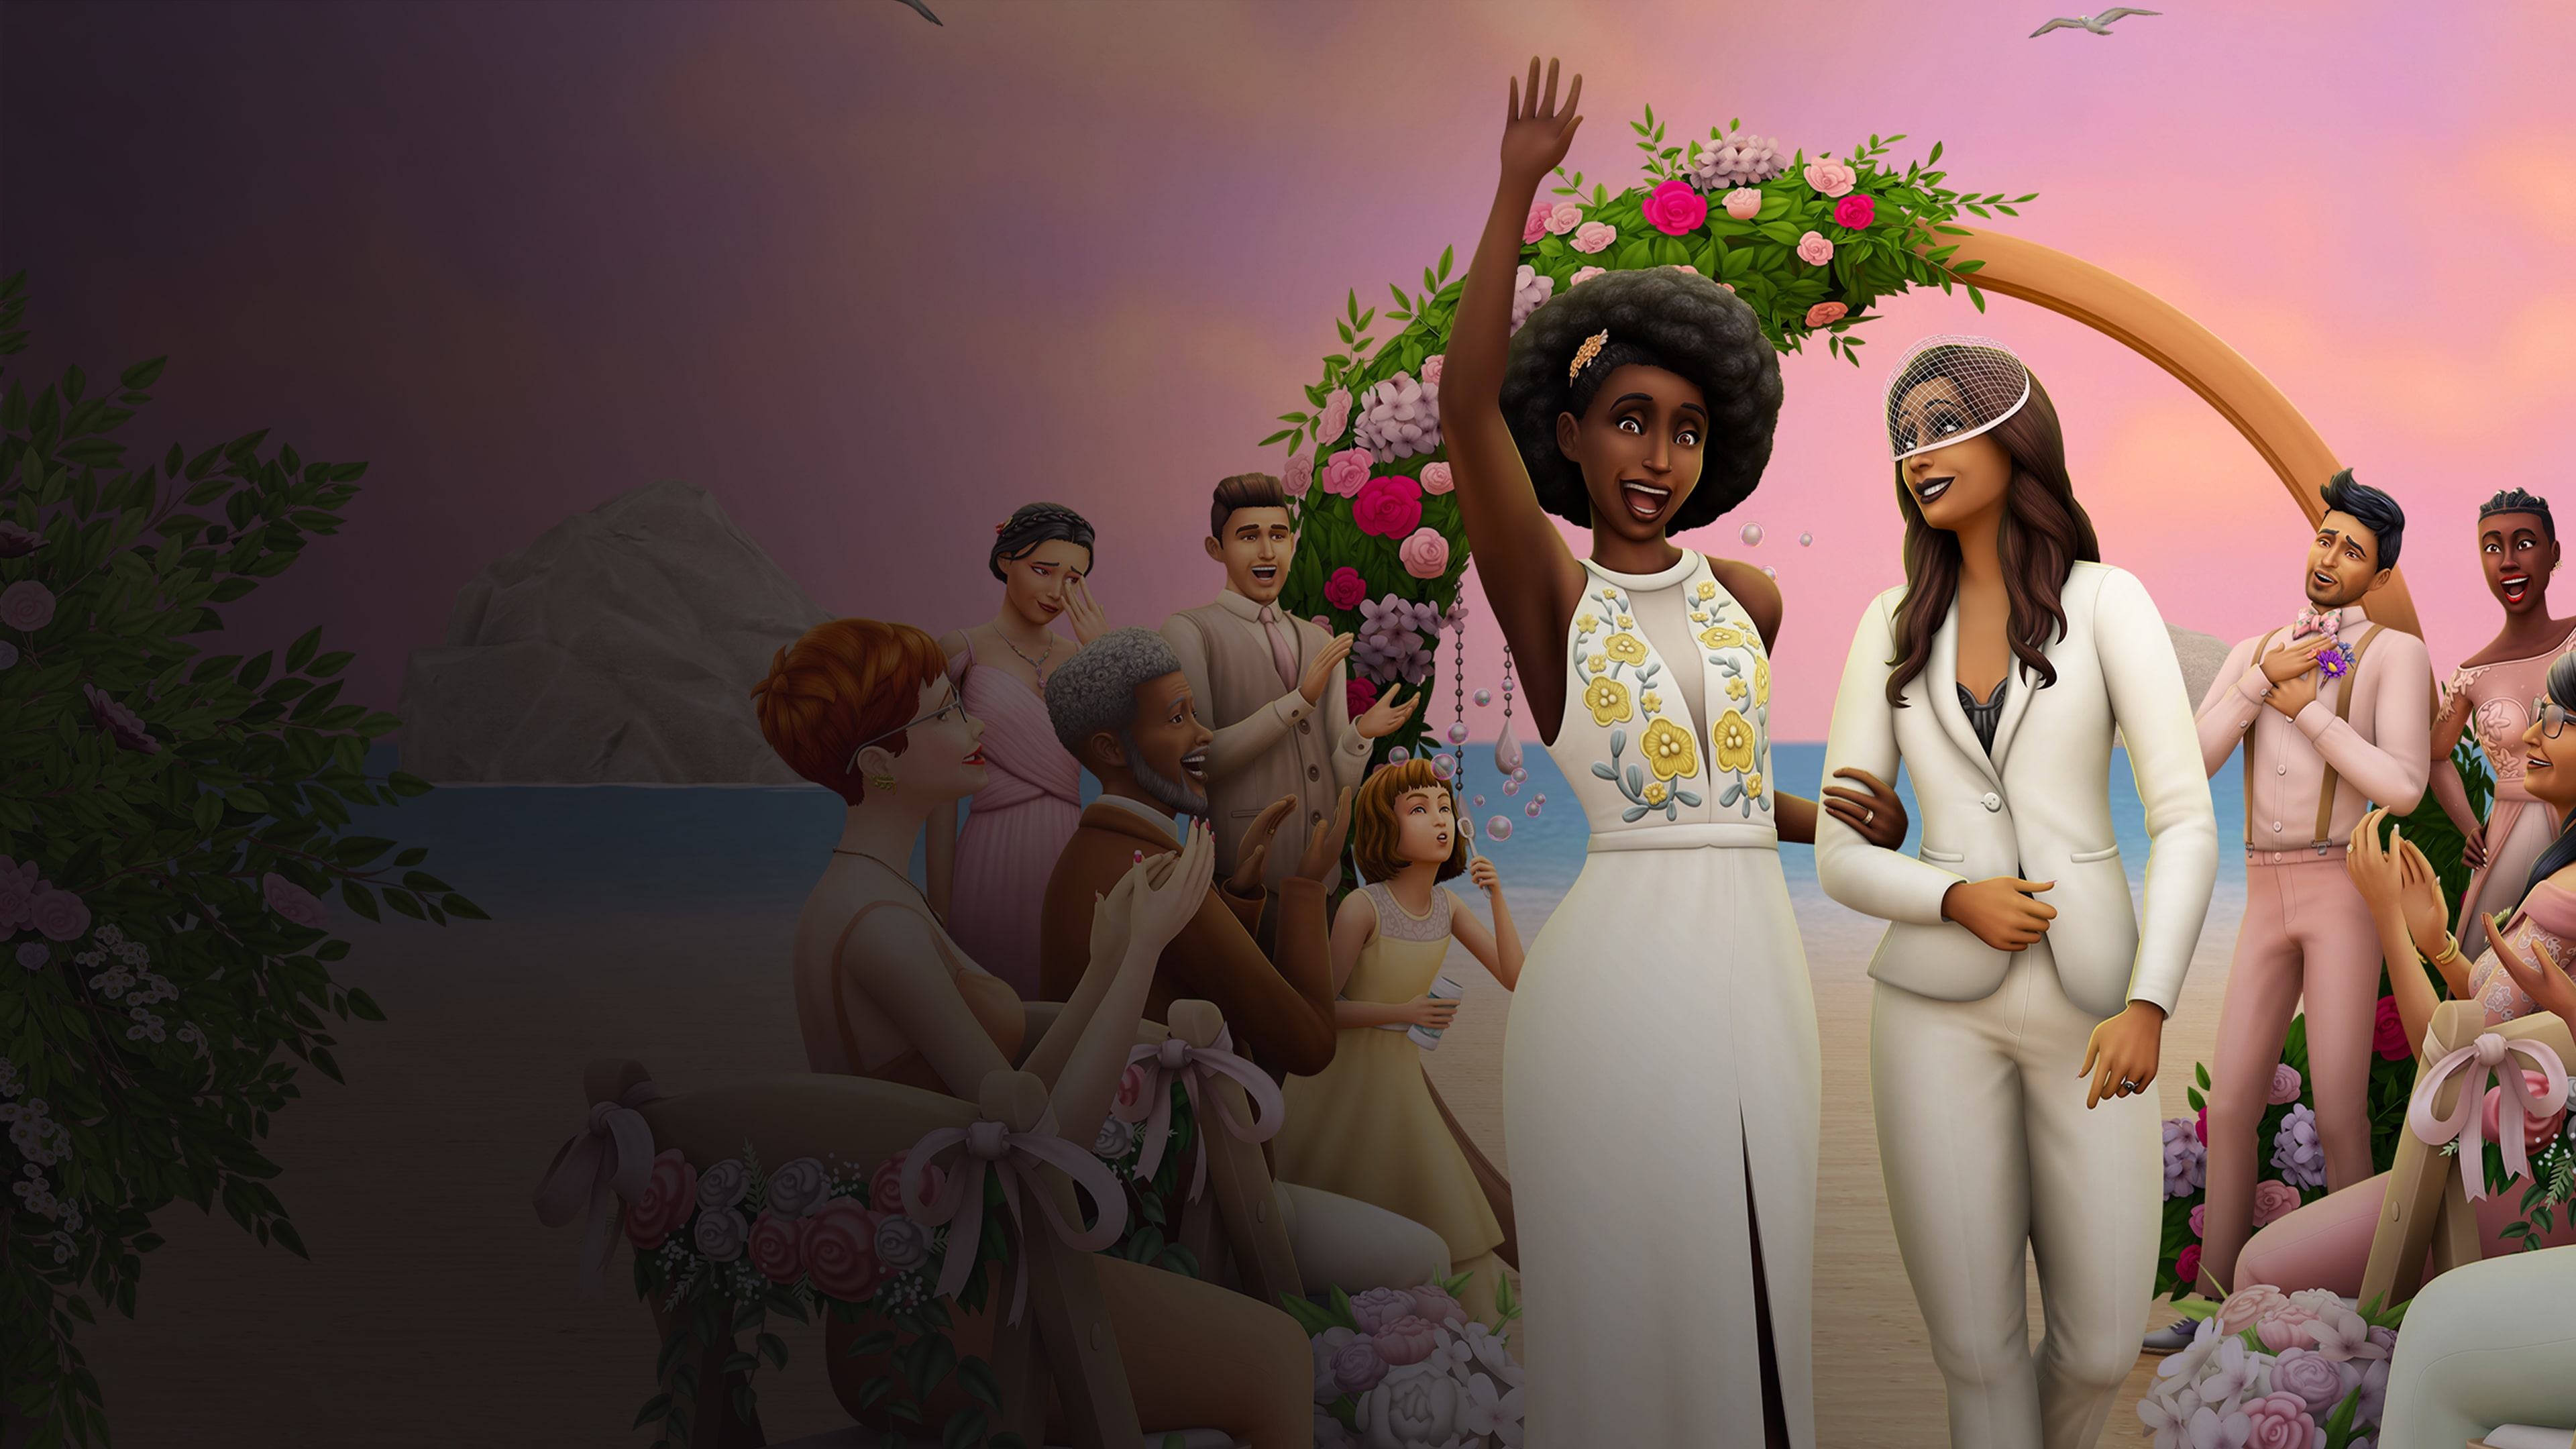 The Sims™ 4 Pacote de Jogo Histórias de Casamento